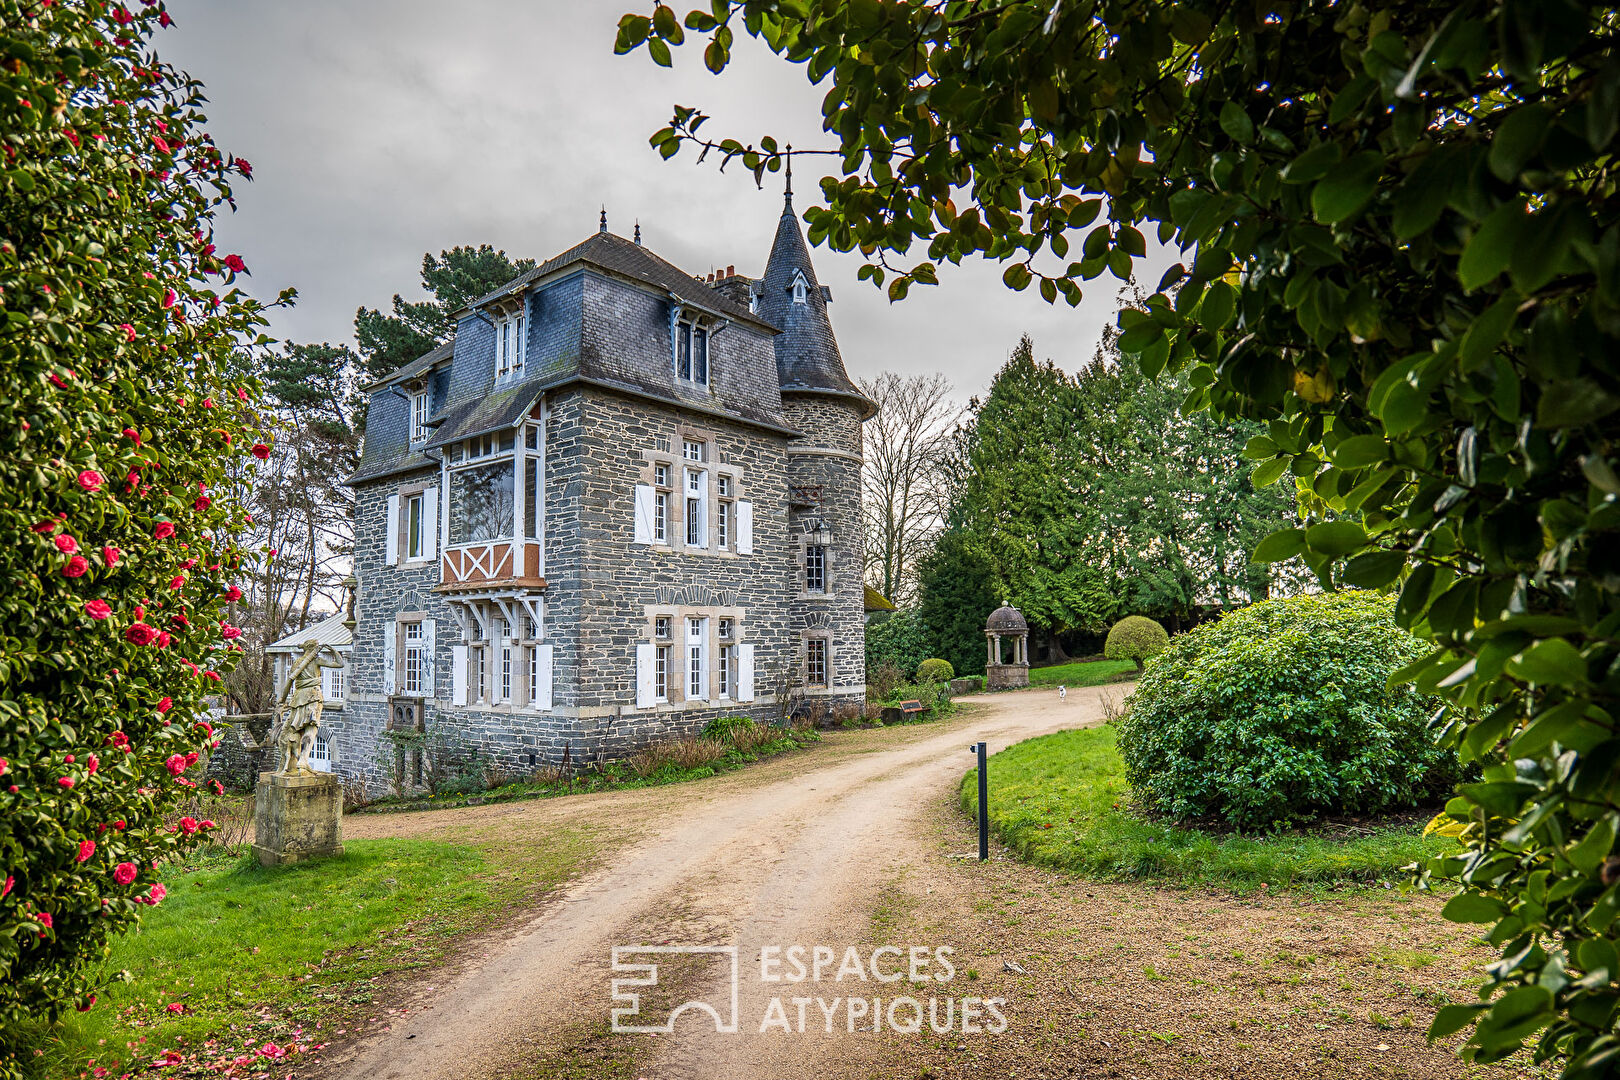 The elegant – Sumptuous 19th century manor